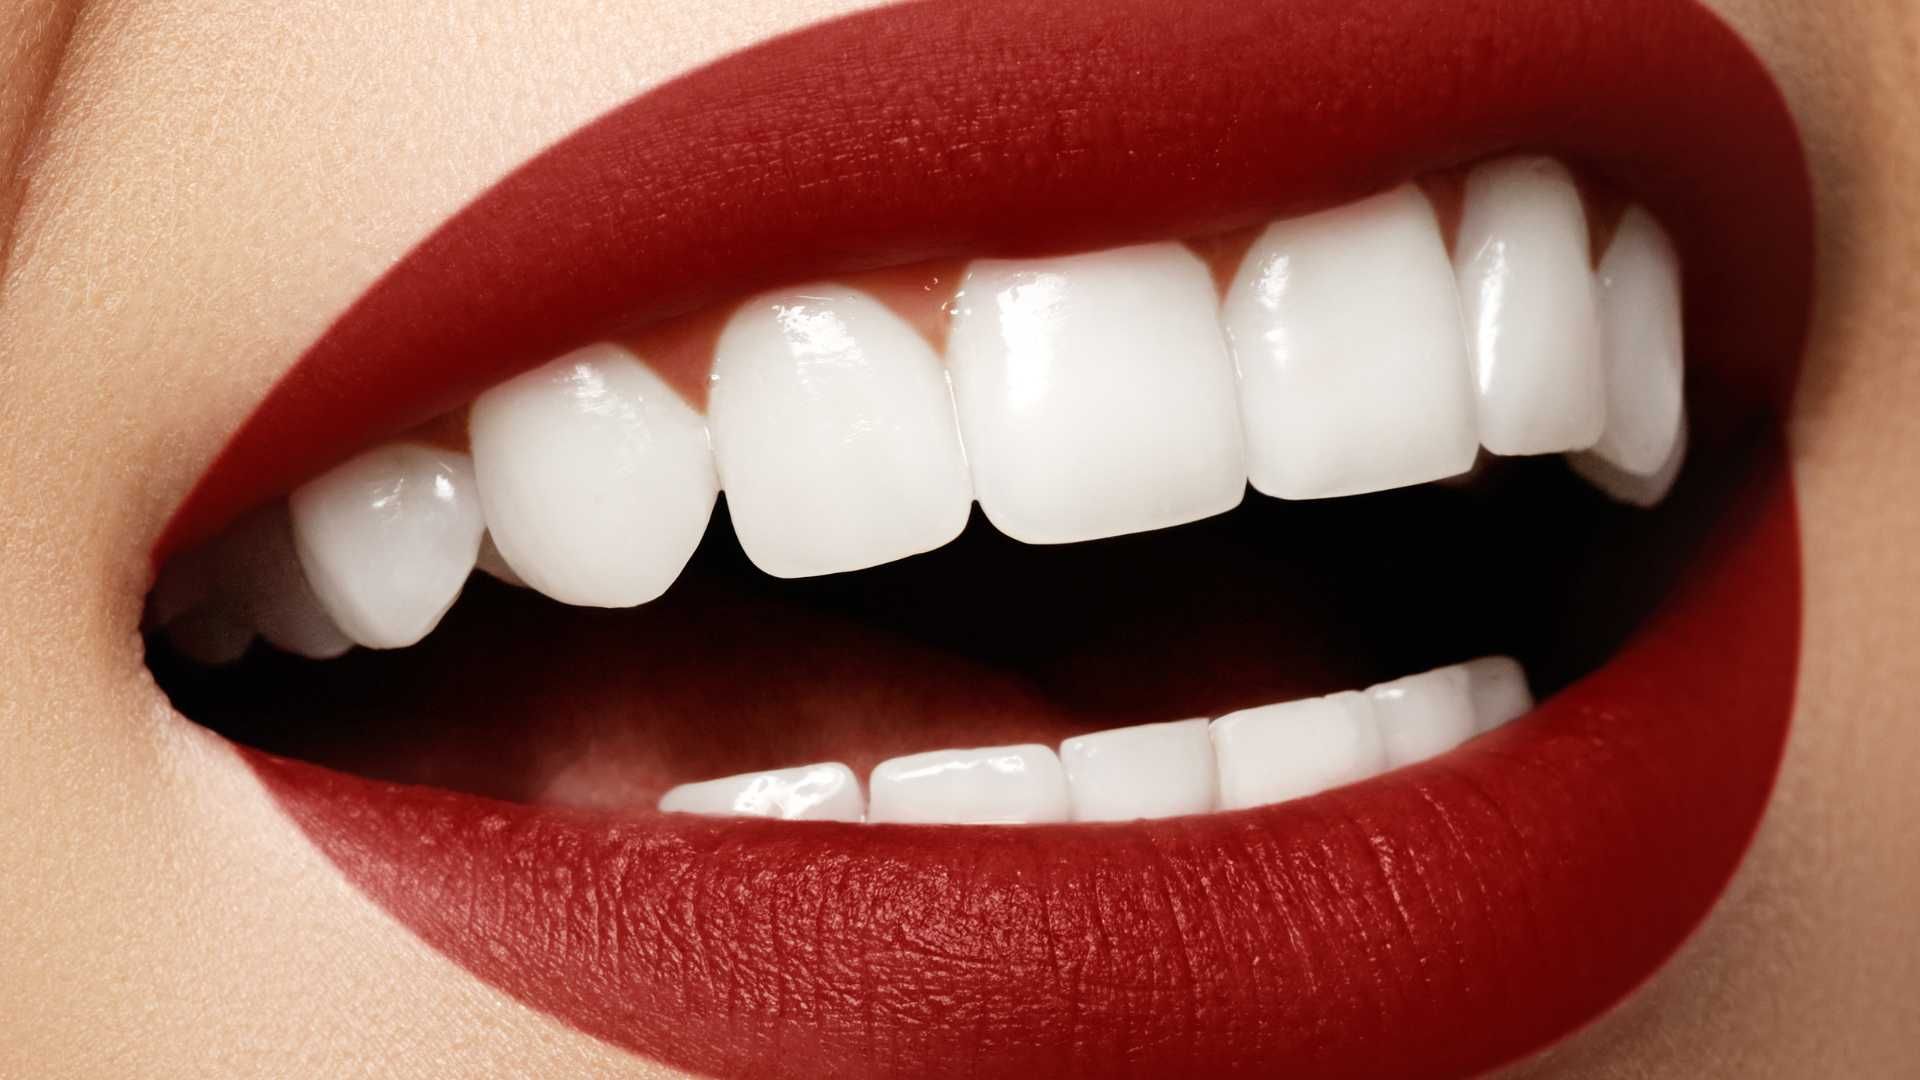 آفیس بلیچینگ (سفید کردن دندان) دو فک با مواد ایرانی